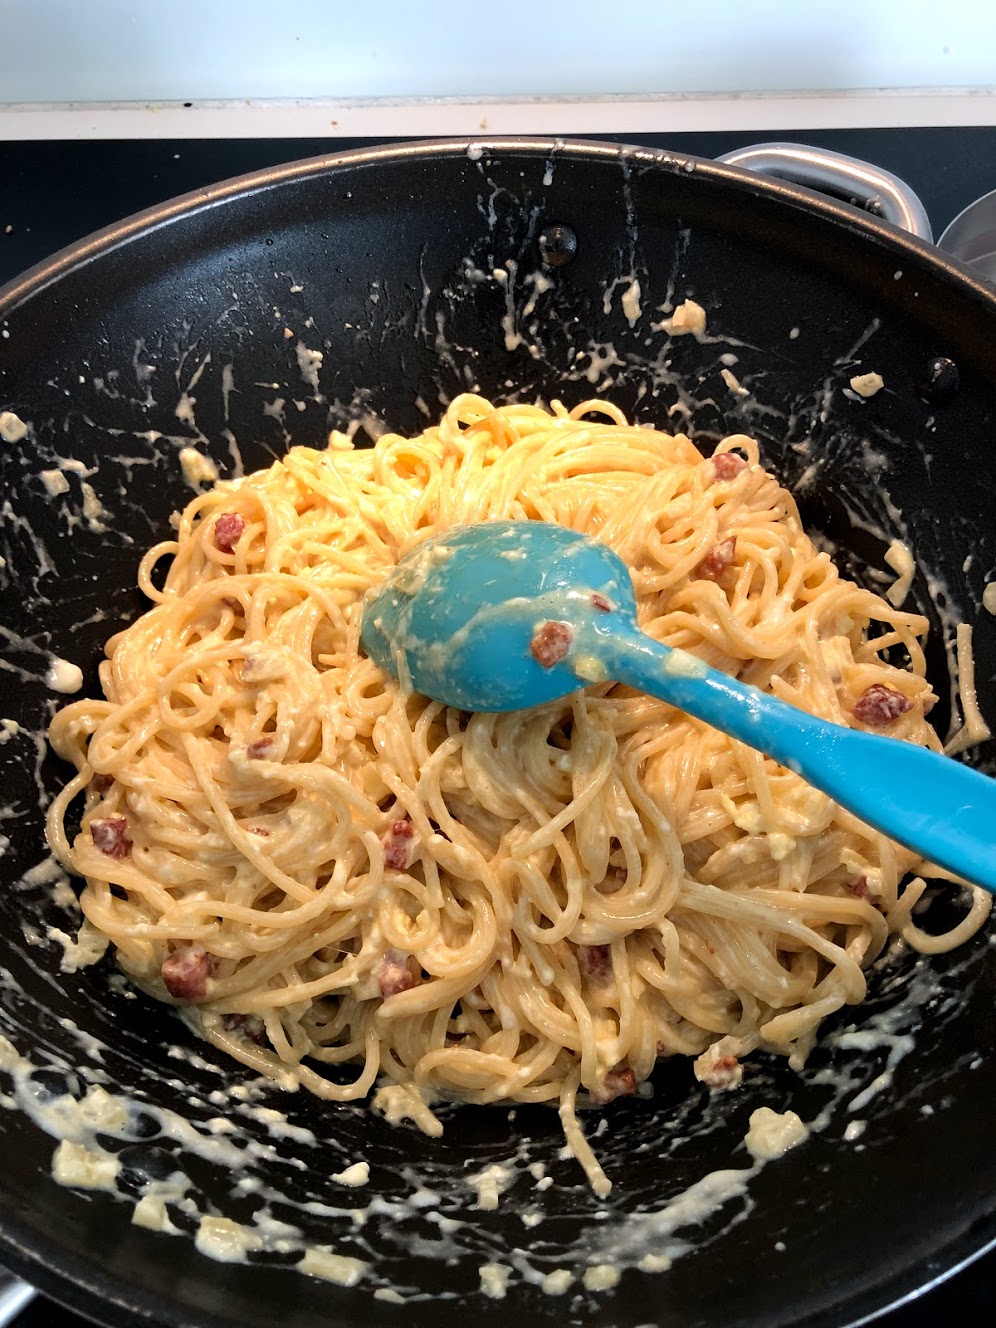 opskrift på pasta spaghetti carbonara spagetti cabonara opskrift på hjemmelavet bacon pancetta fløde og æg løg